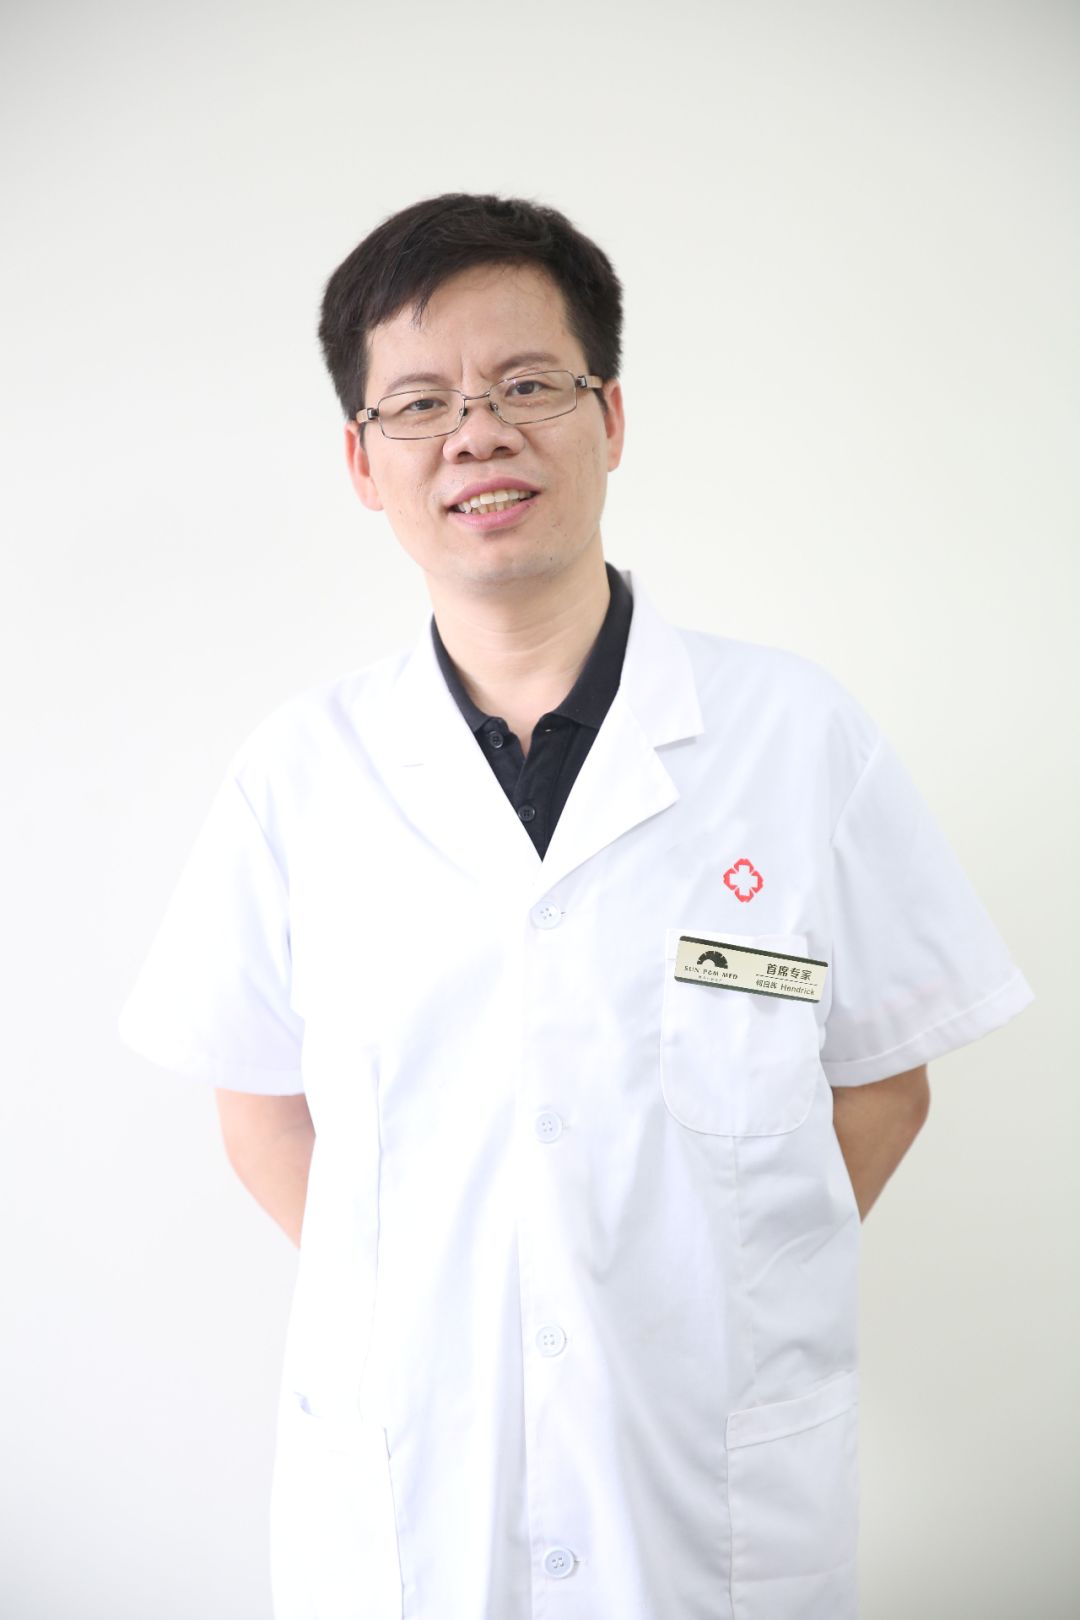 精神科医生批杨永信:他是自恋型人格障碍患者